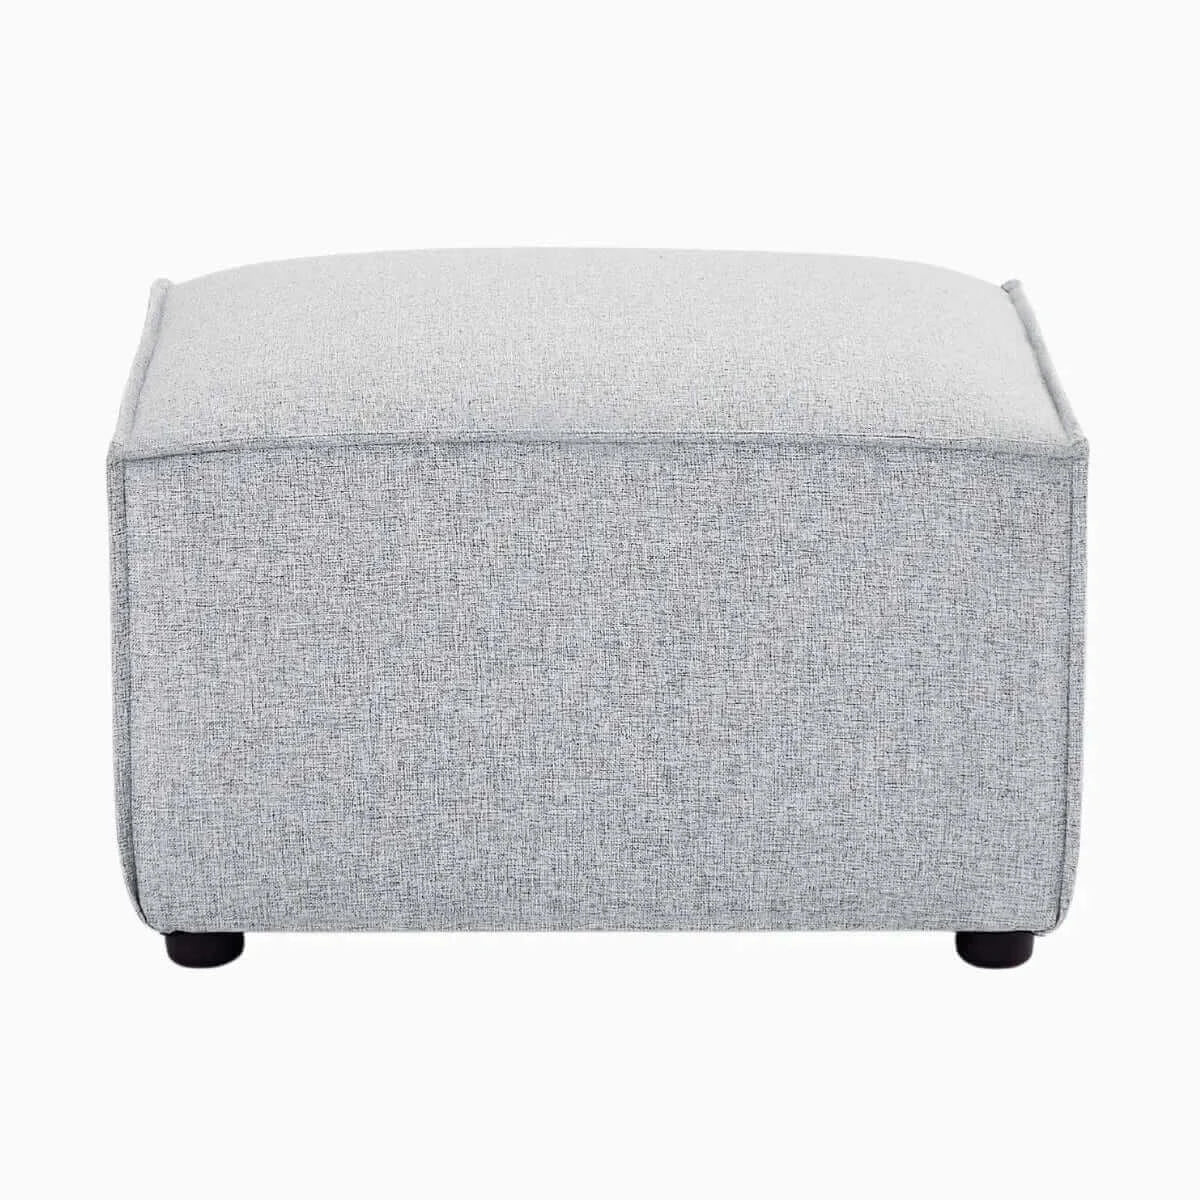 Buy bryce ottoman modular sofa - upinteriors-Upinteriors